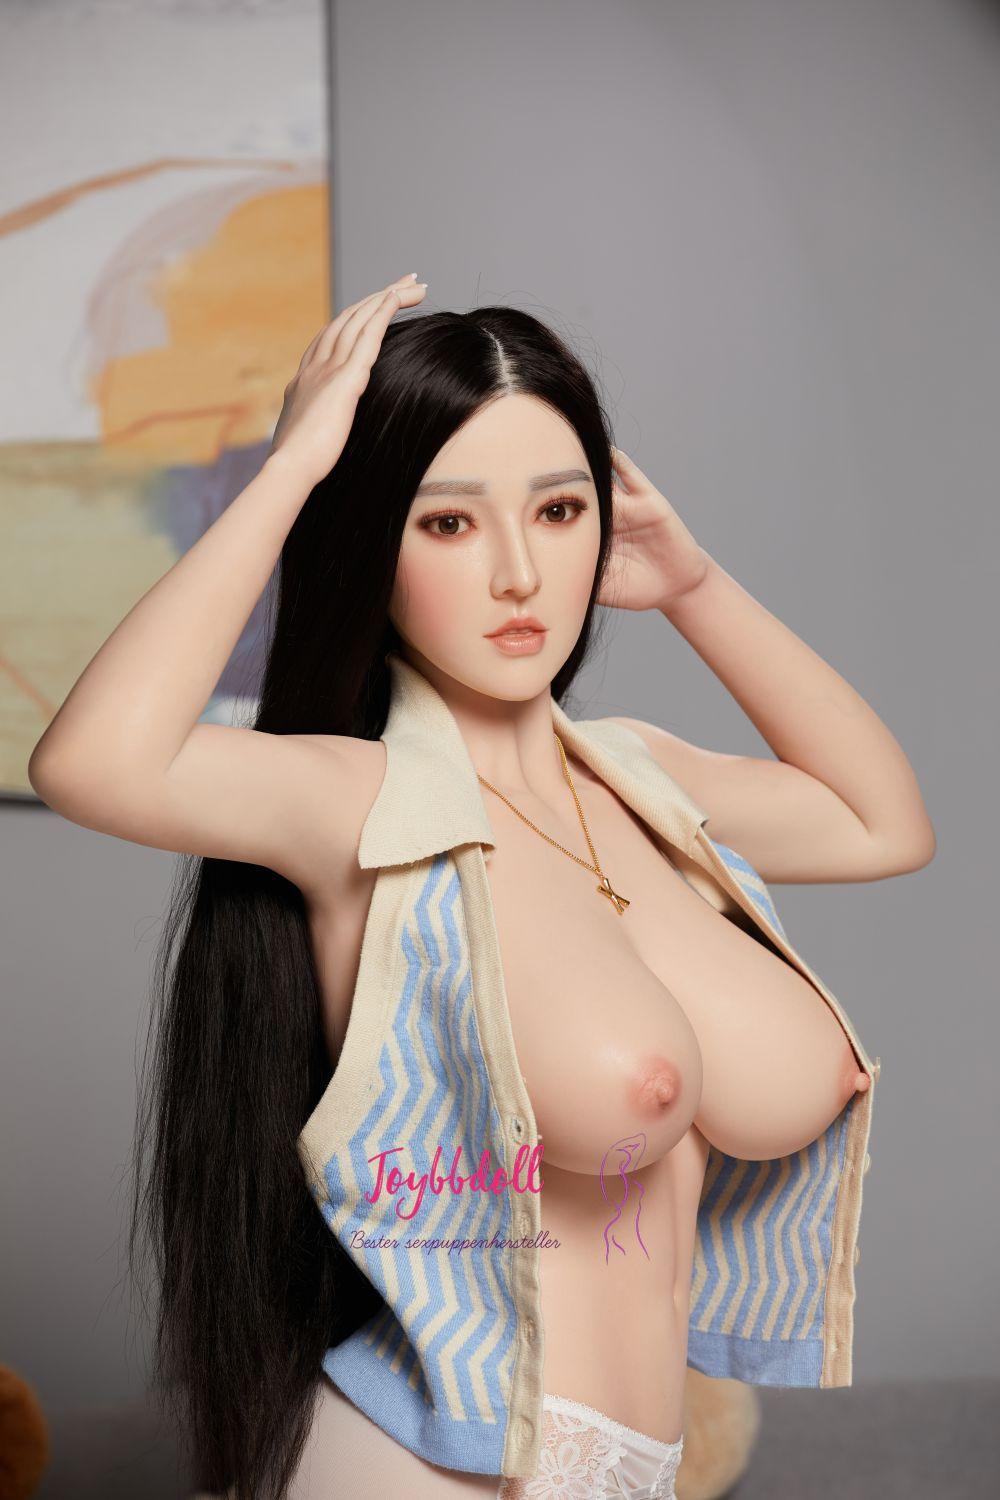 Bing-Bekannte internationale Schauspielerin - Joybbdoll-CST Doll